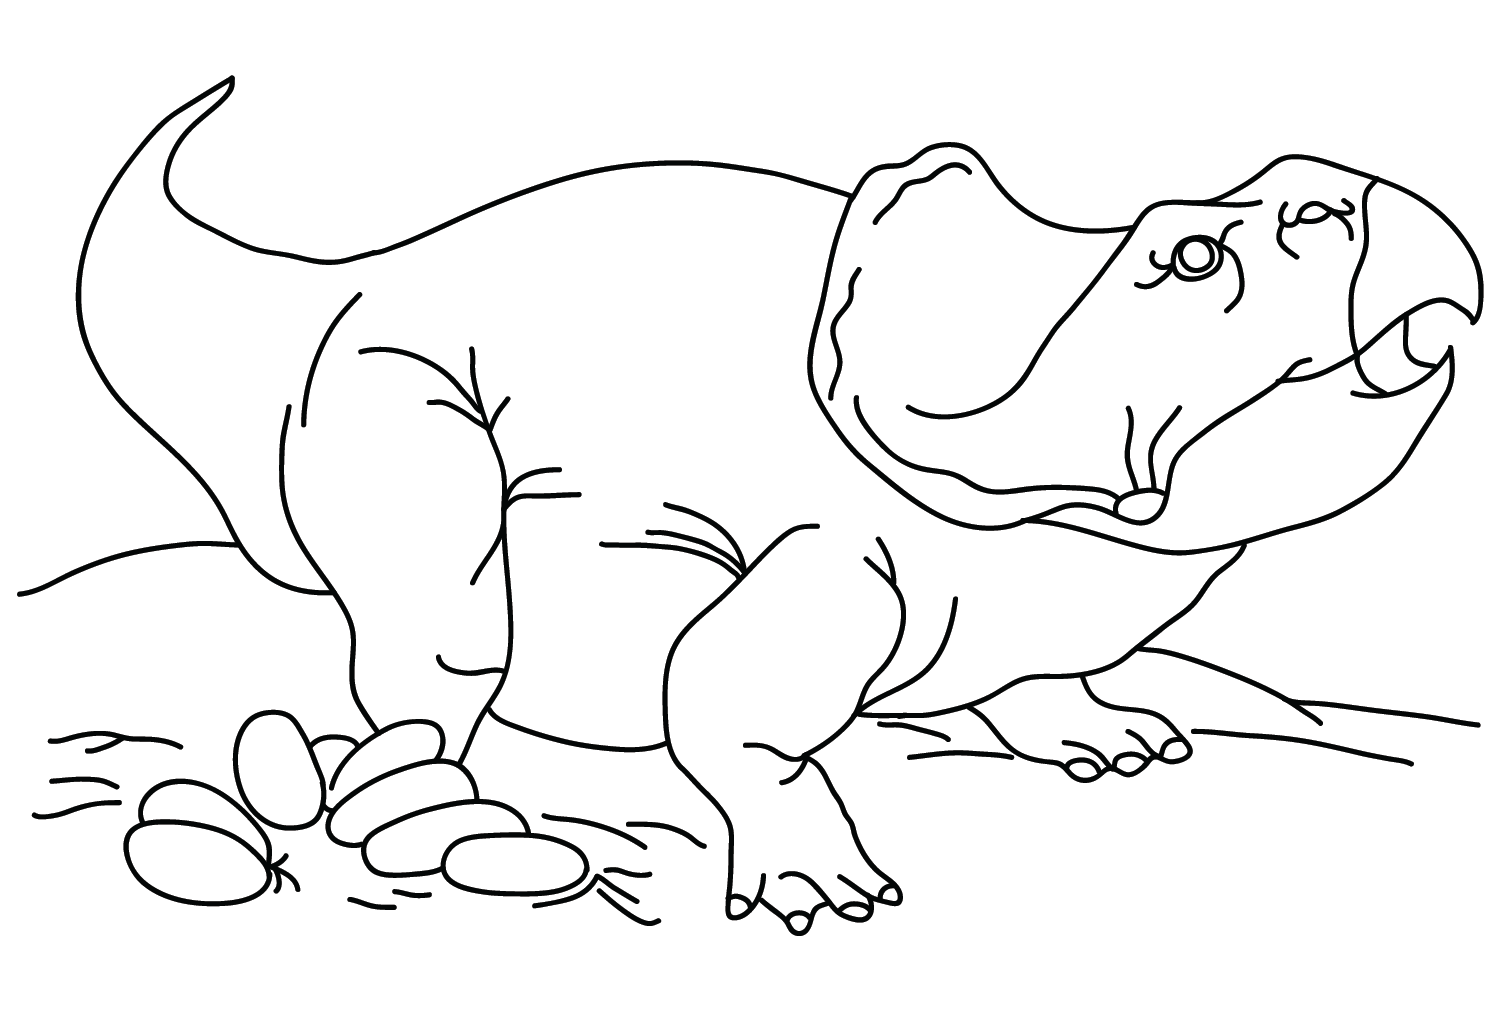 Protoceratops e uova da colorare di Protoceratops